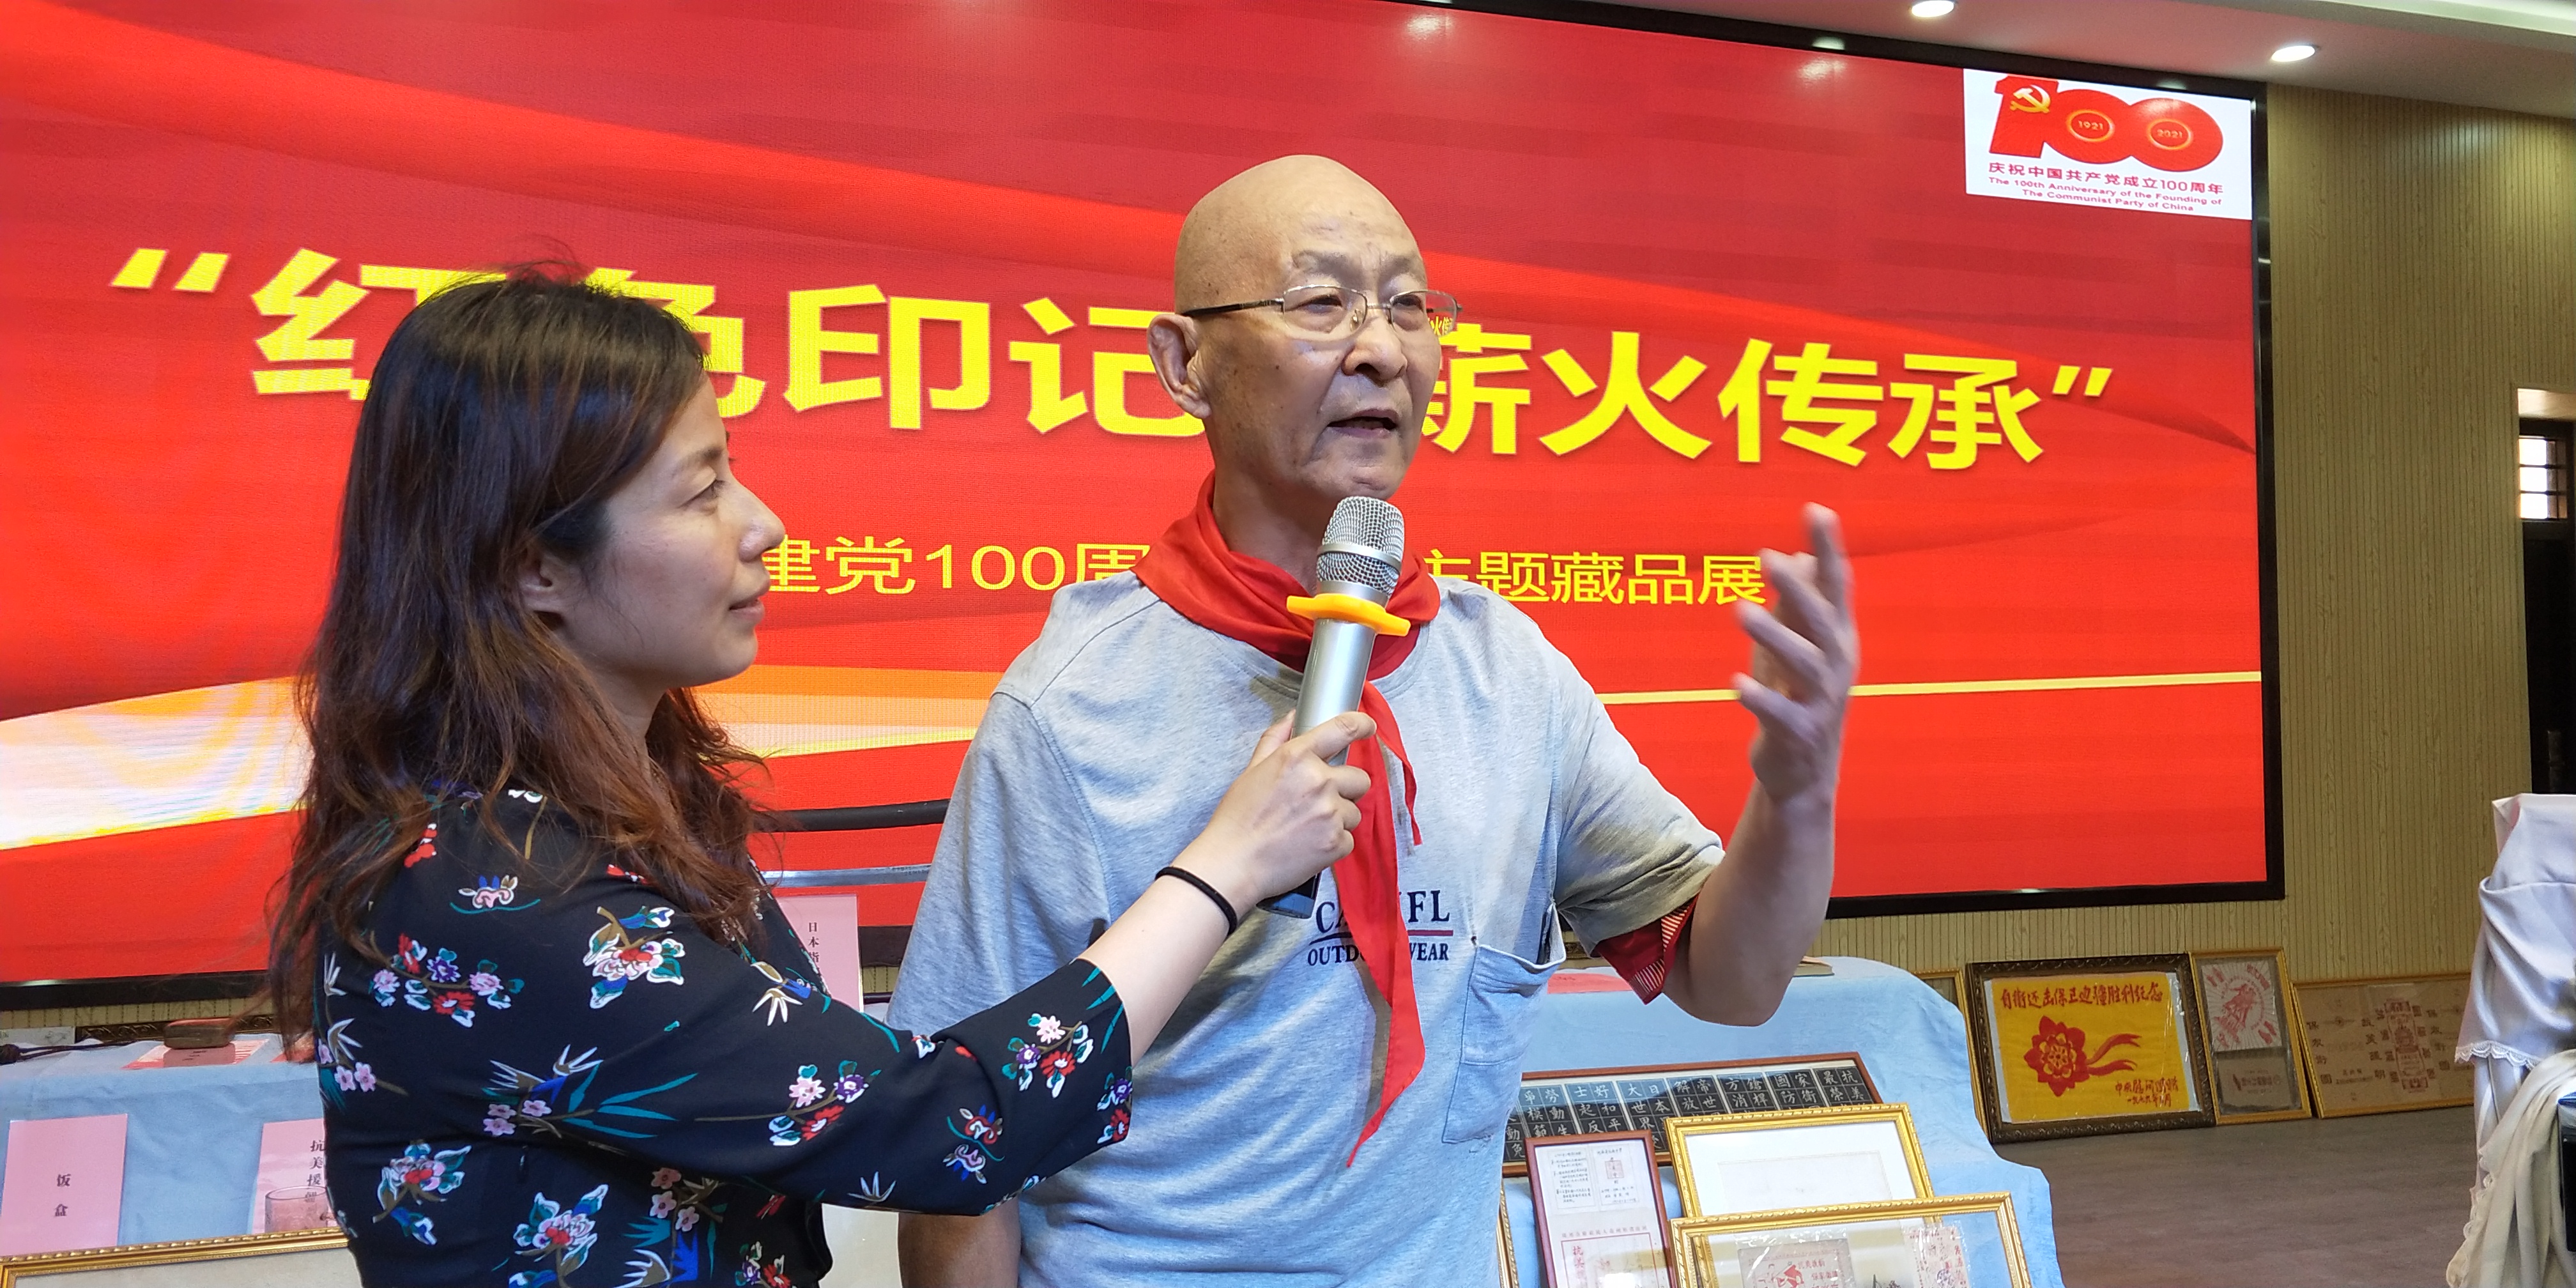 郑州市二七区建新街小学迎建党一百周年红色藏品展在该校举行